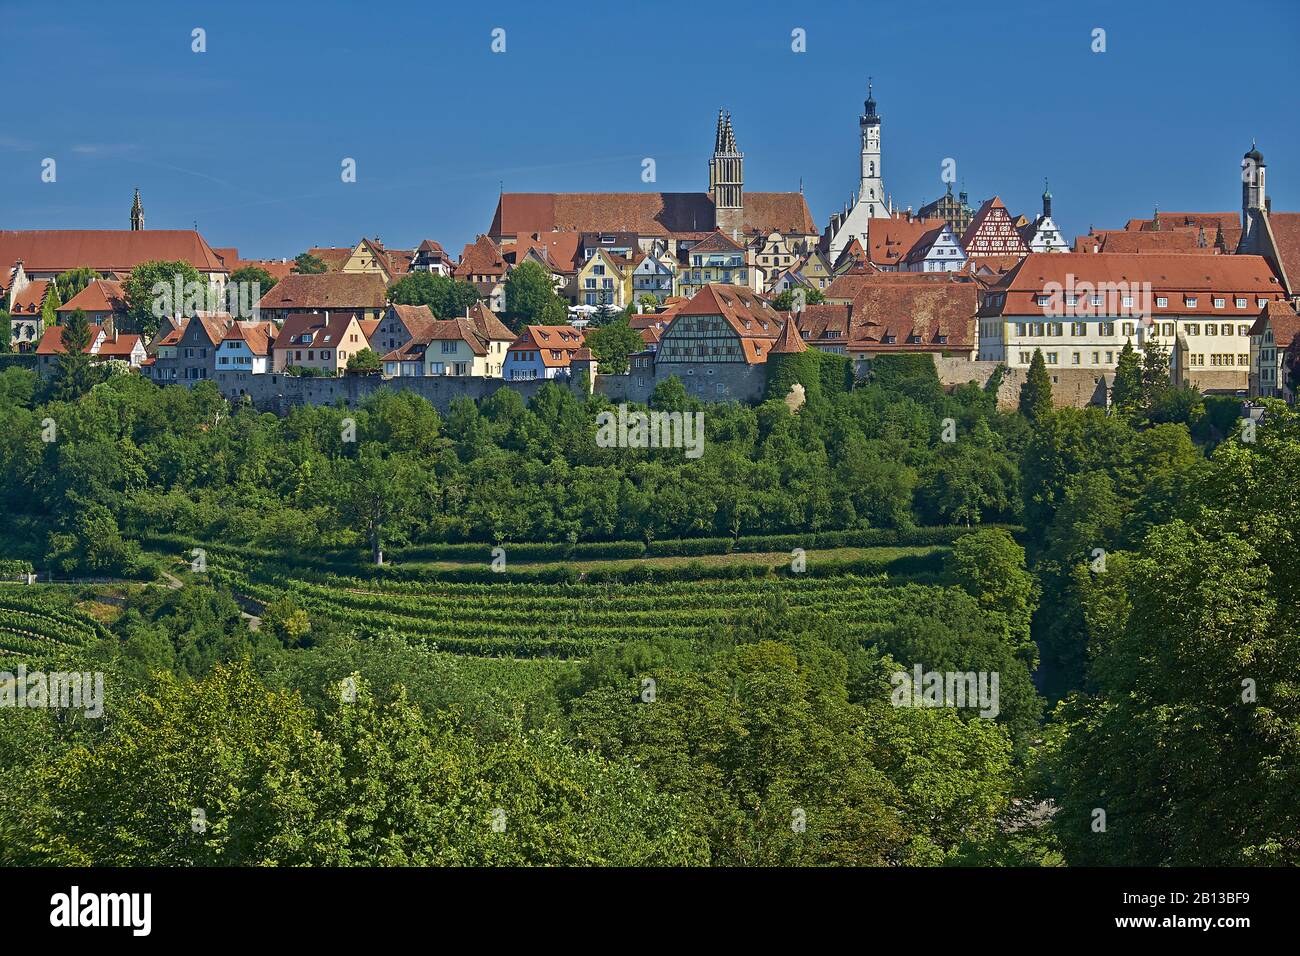 Stadtbild mit Weinbergen von Rothenburg ob der Tauber, Bayern, Deutschland Stockfoto